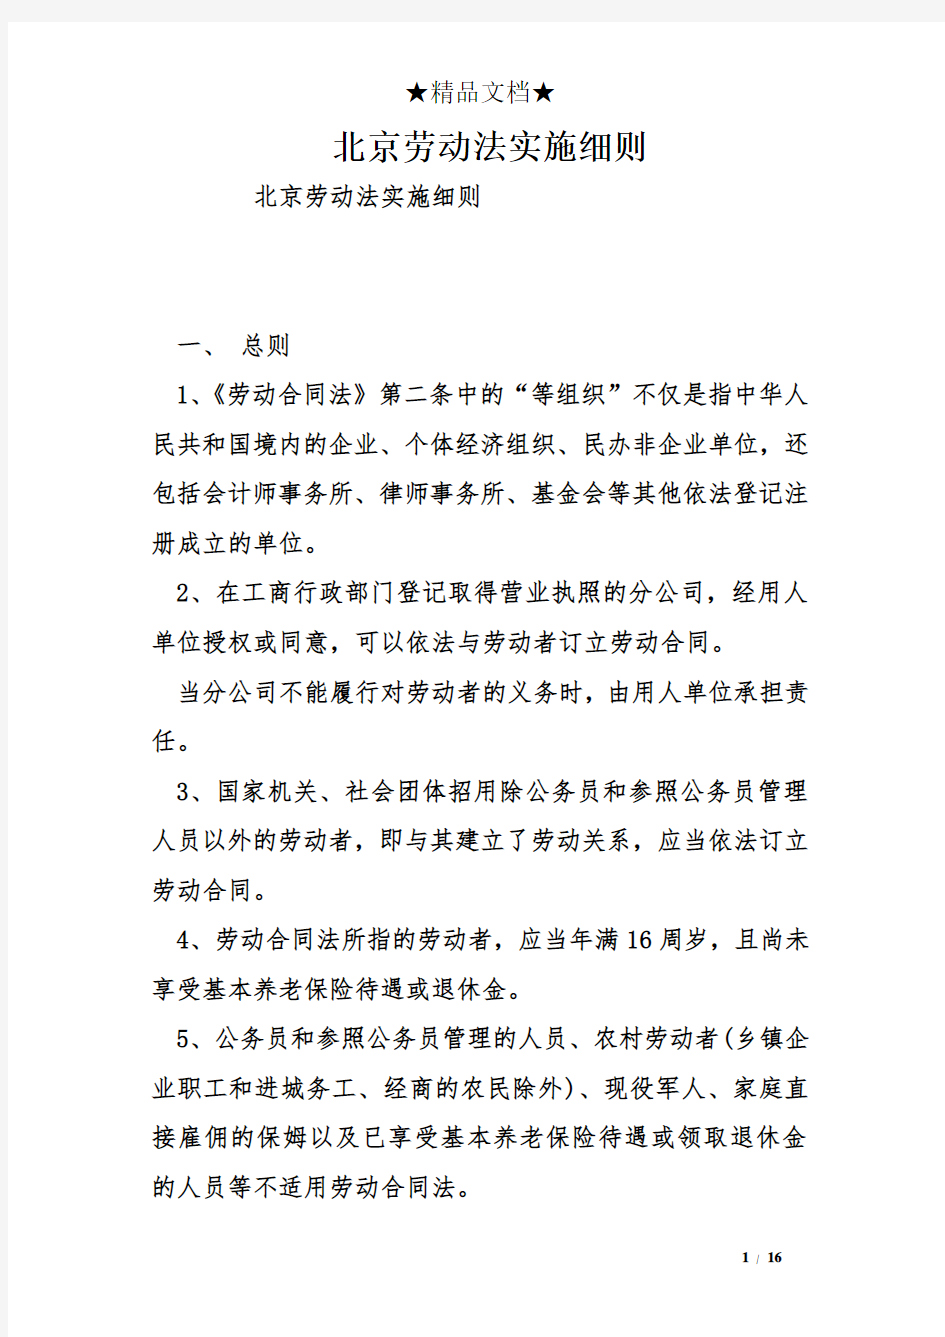 北京劳动法实施细则